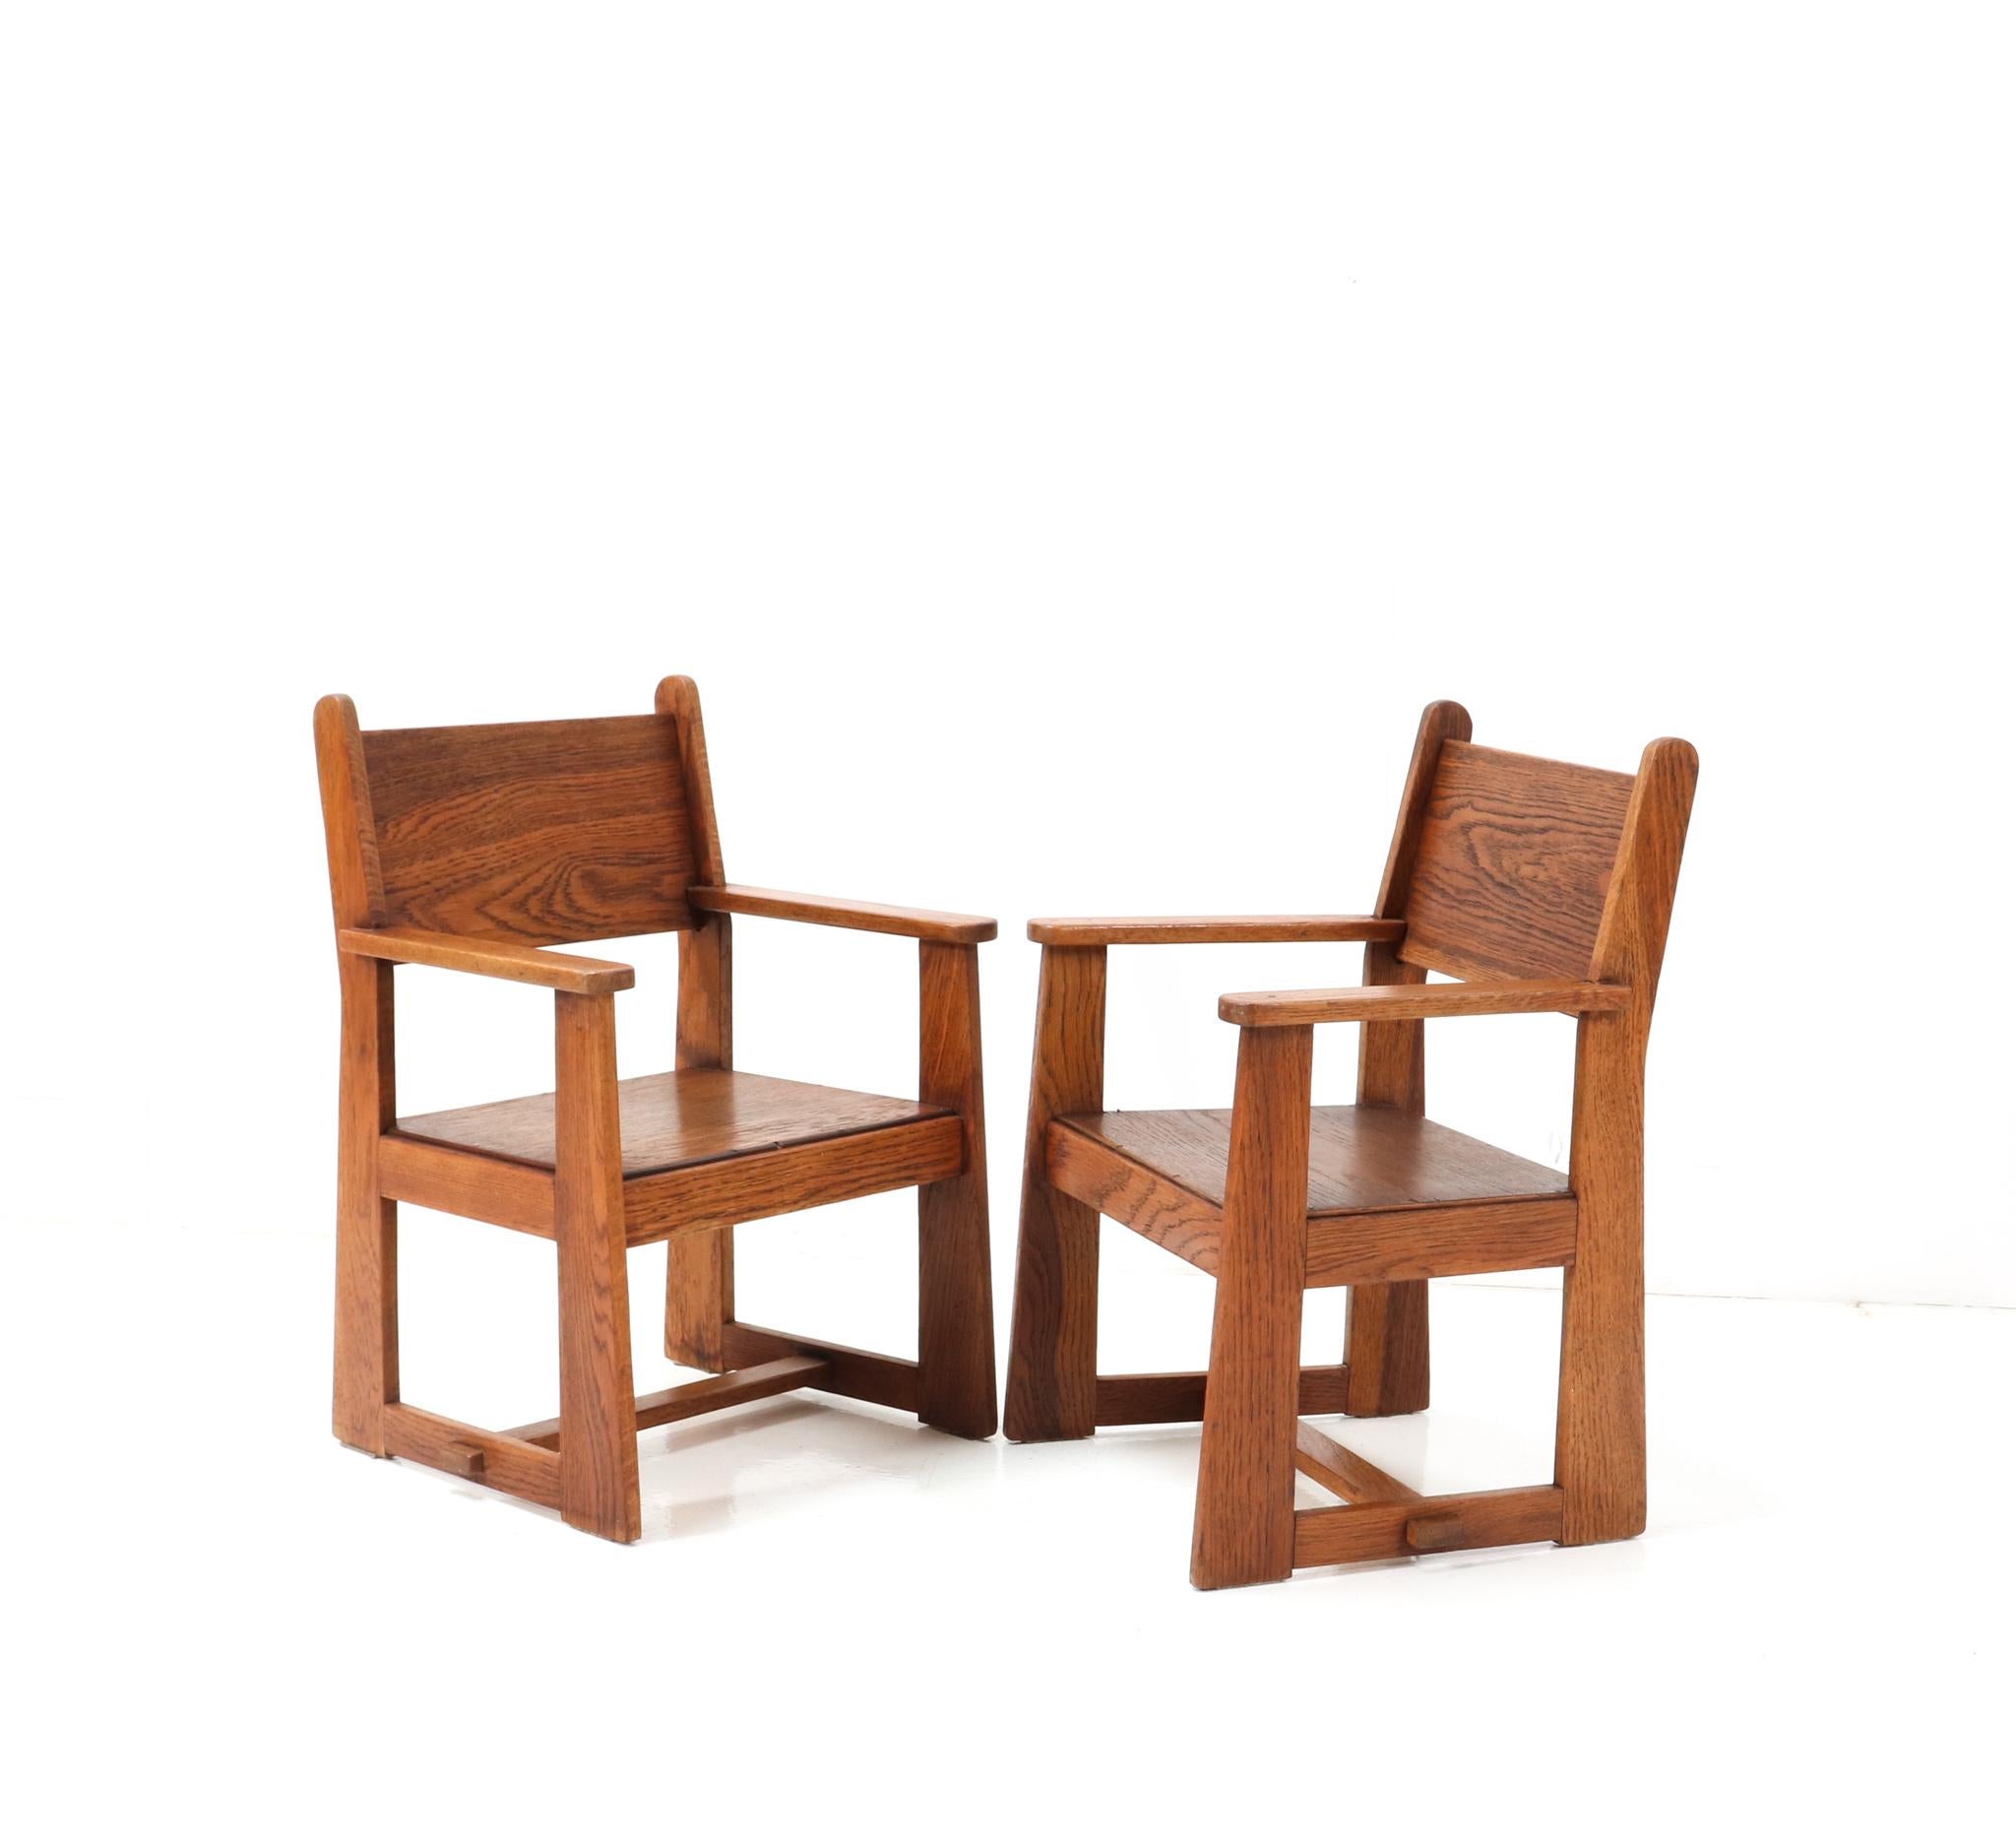 Magnifique et ultra rare ensemble de deux fauteuils d'enfants modernistes Art Déco.
Création de Jan Wils pour Meubelfabriek Eik en Linden Alkmaar.
Un design néerlandais saisissant datant d'environ 1918.
Cadres en chêne massif avec sièges